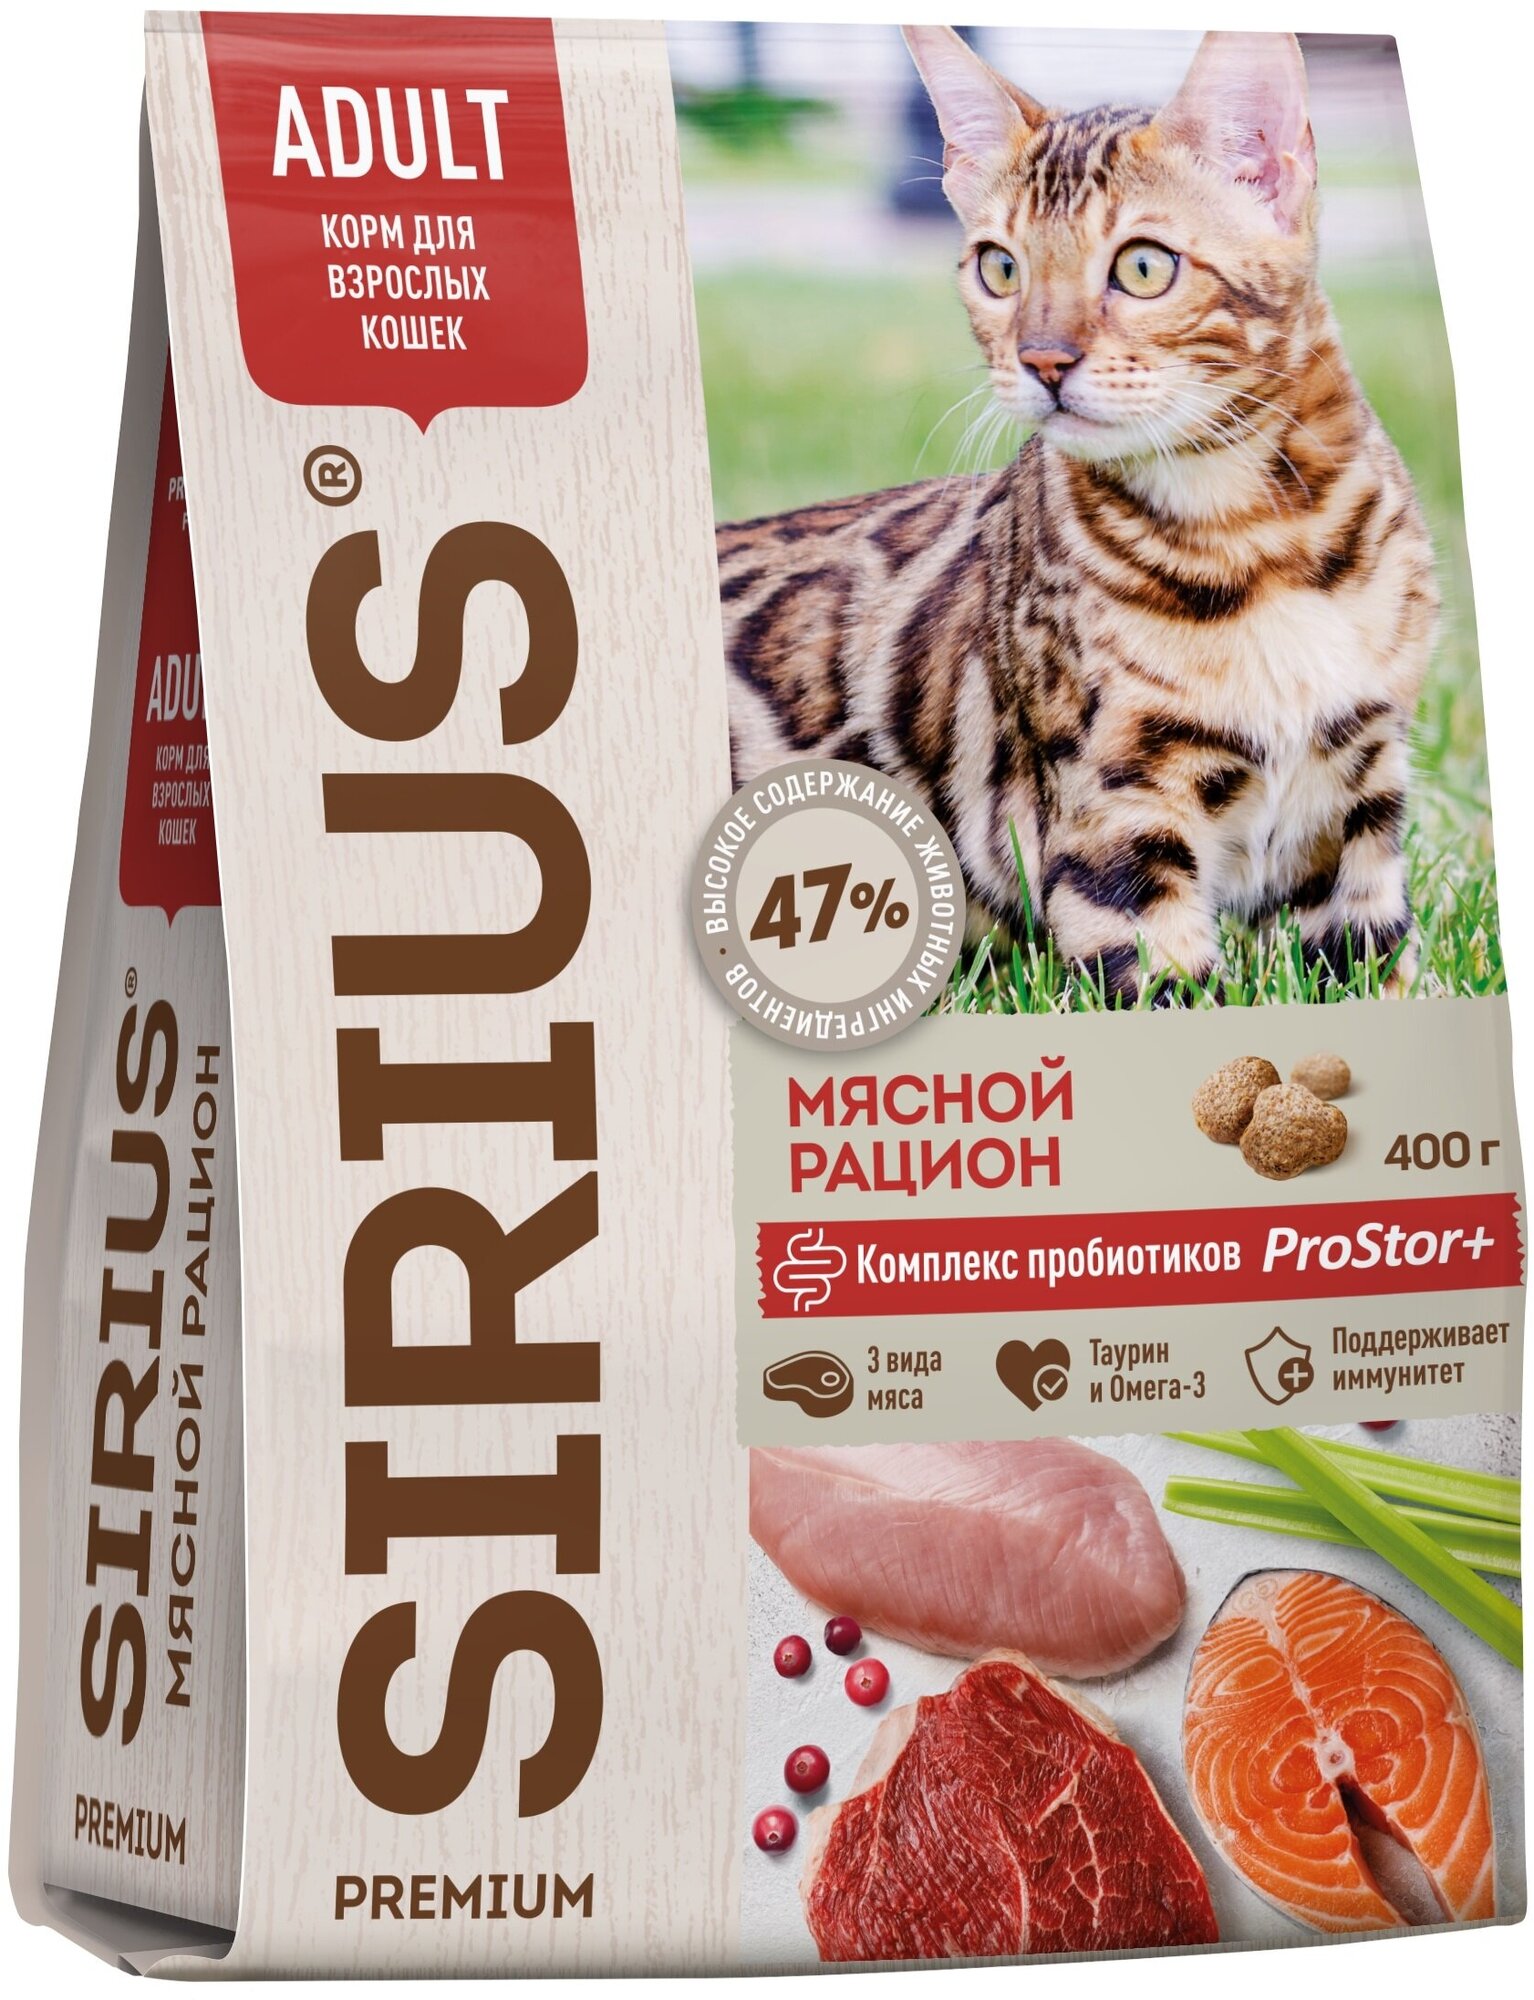 Sirius Сириус сухой полнорационный корм для взрослых кошек Мясной рацион 400гр